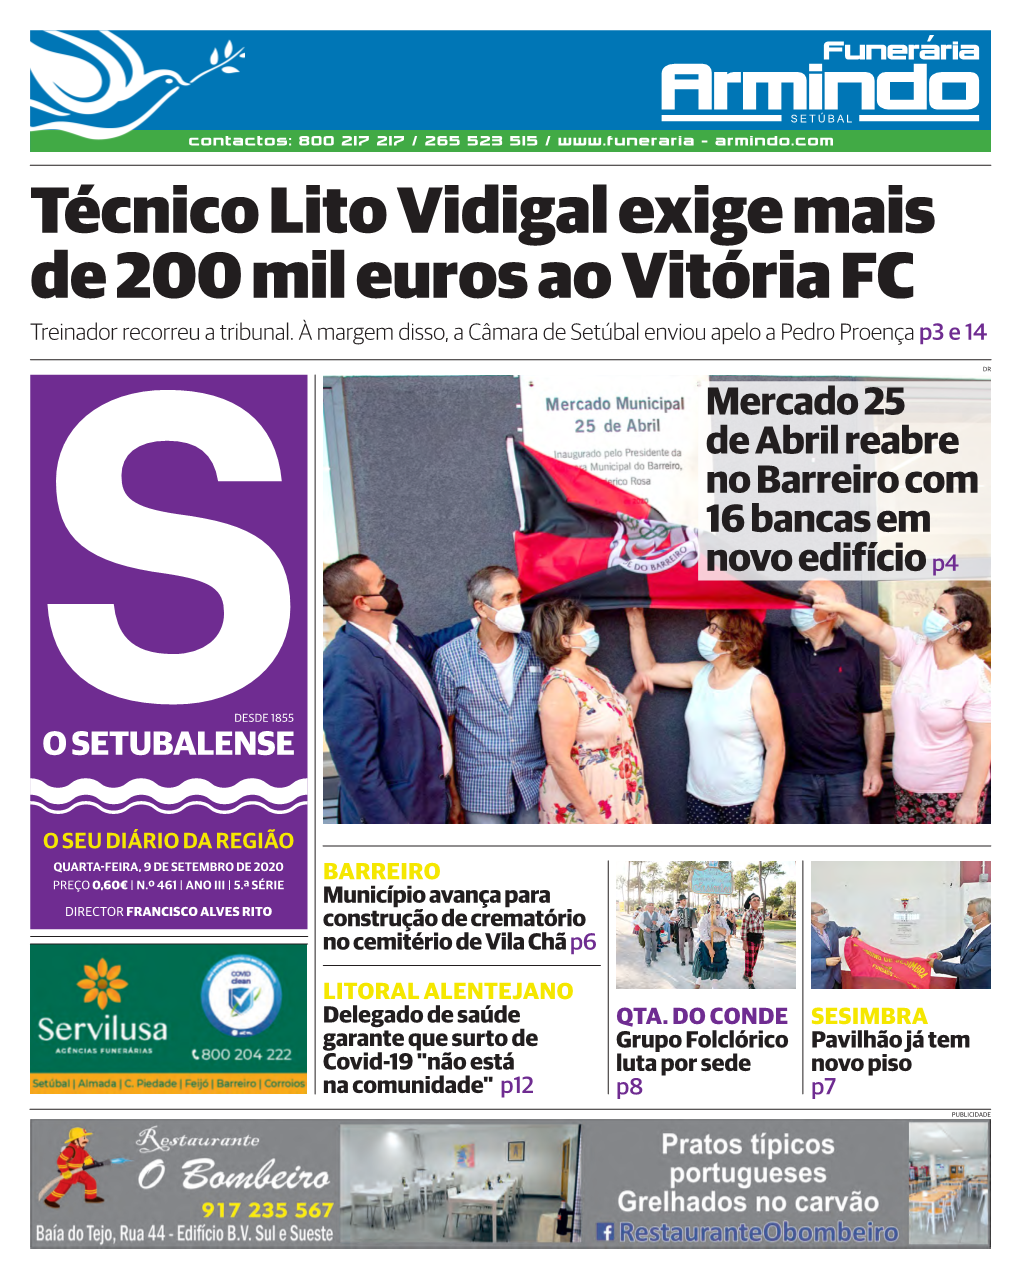 Técnico Lito Vidigal Exige Mais De 200 Mil Euros Ao Vitória FC Treinador Recorreu a Tribunal